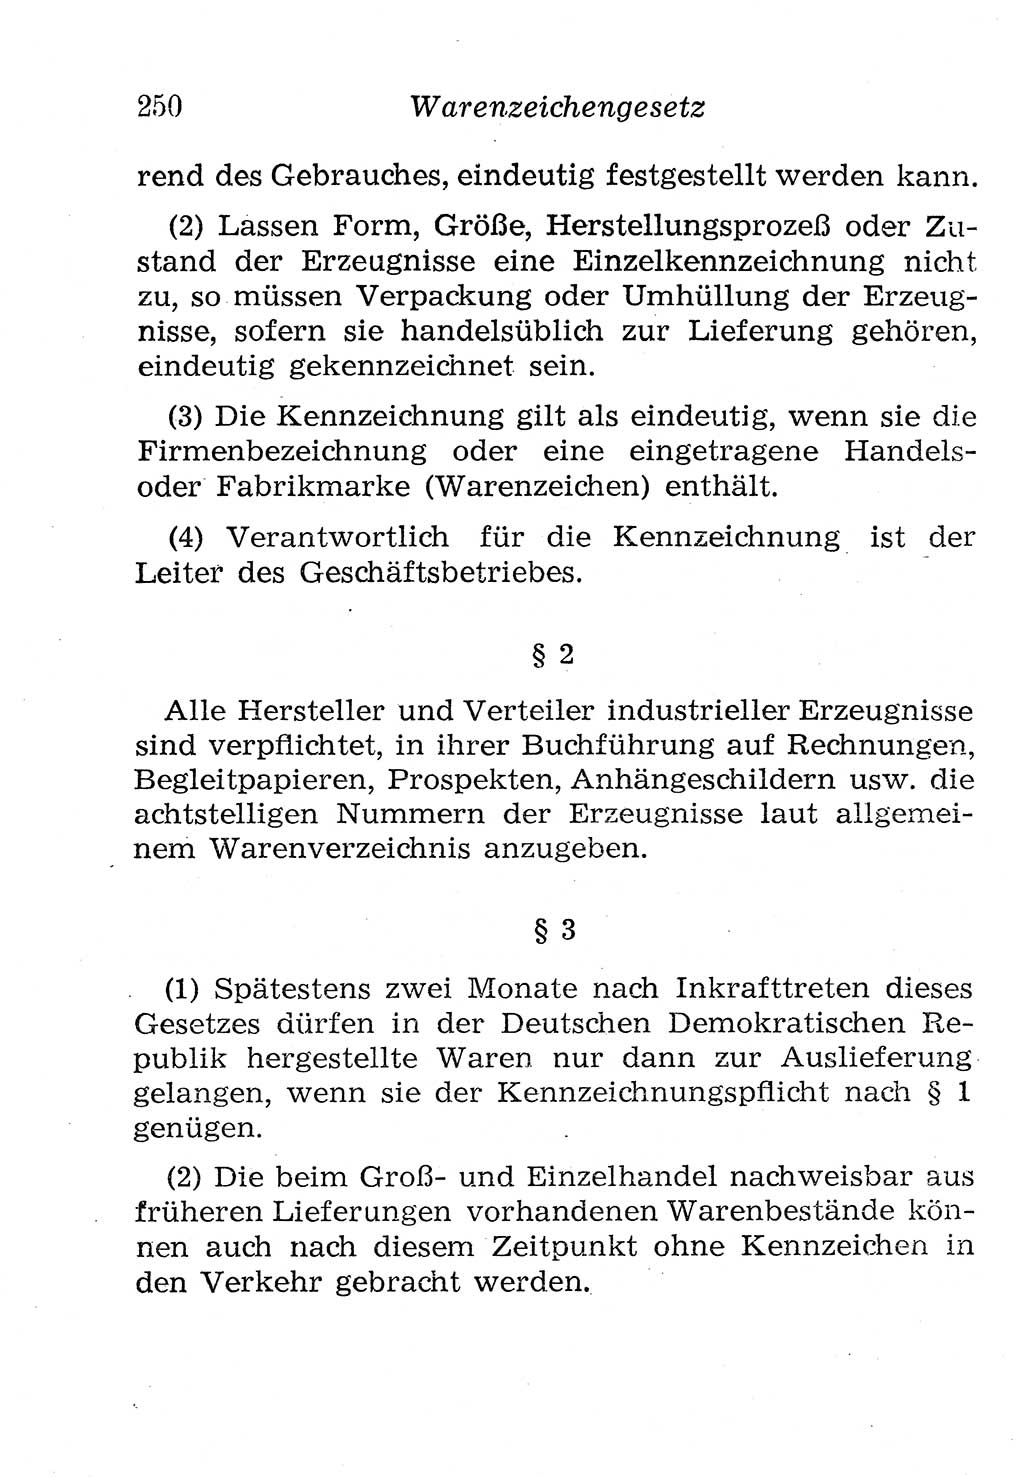 Strafgesetzbuch (StGB) und andere Strafgesetze [Deutsche Demokratische Republik (DDR)] 1958, Seite 250 (StGB Strafges. DDR 1958, S. 250)